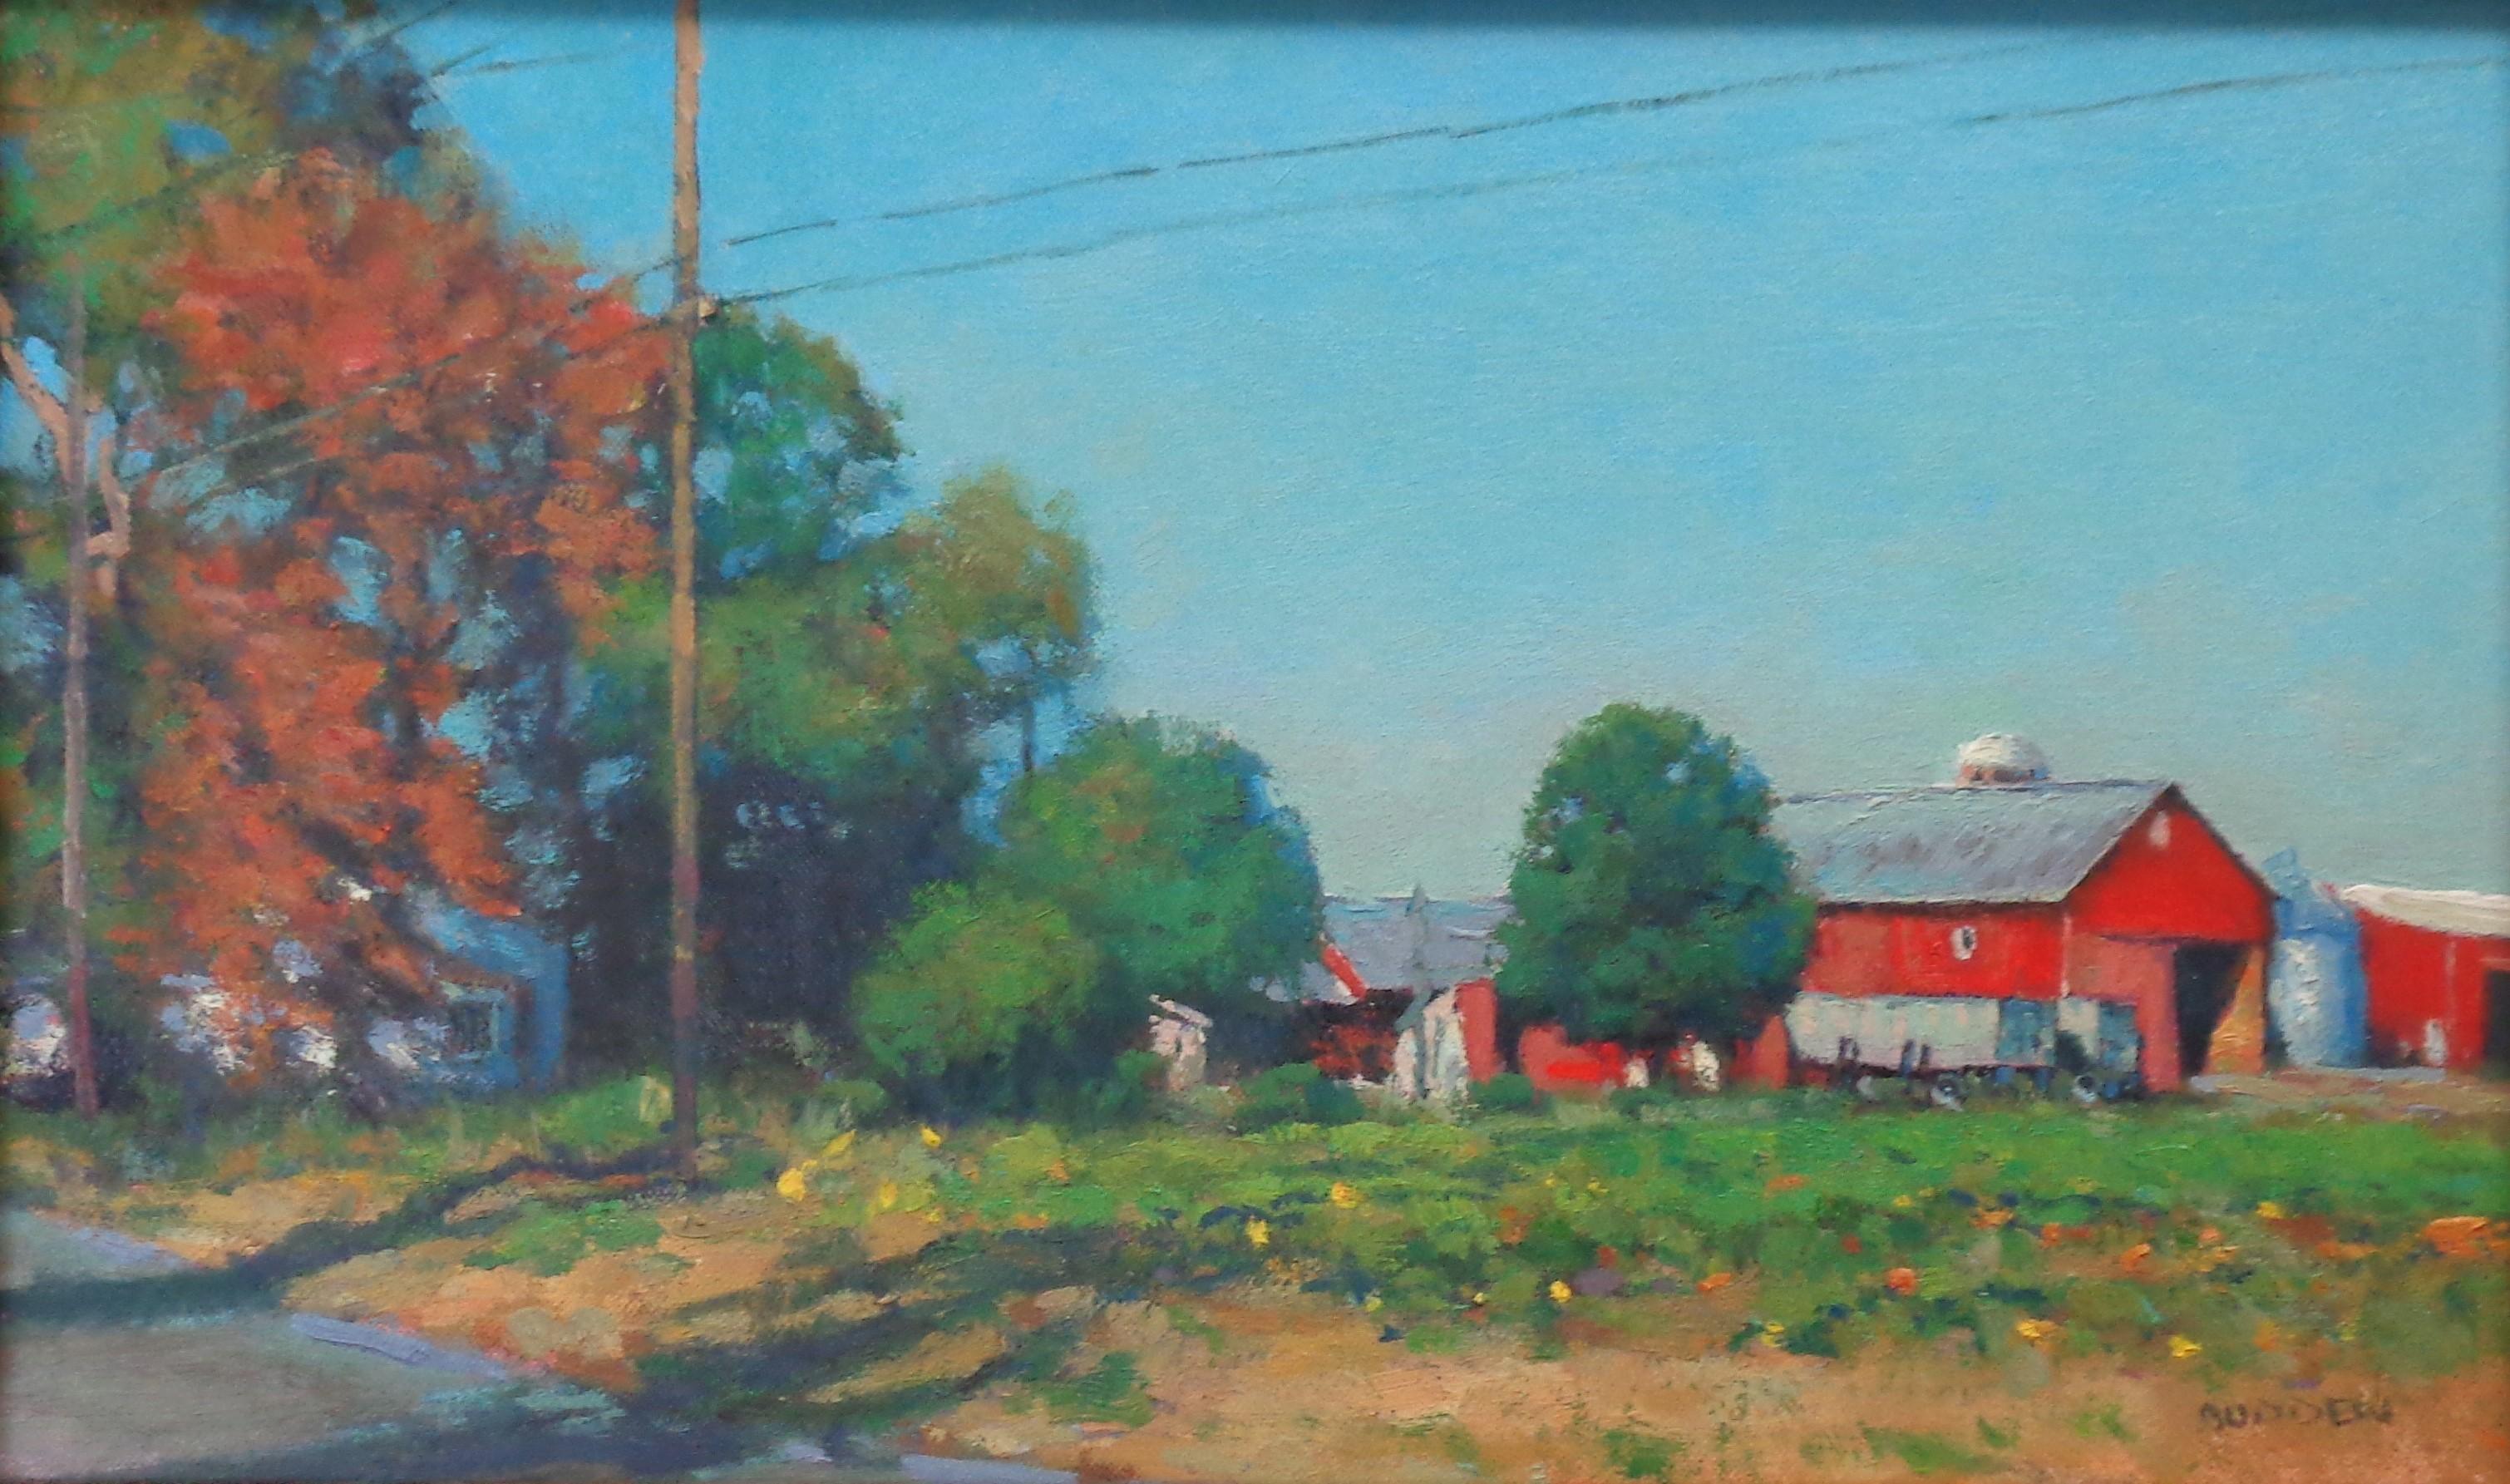  Impressionistic Rural Farm Landscape Painting Michael Budden Autumn Farm For Sale 1